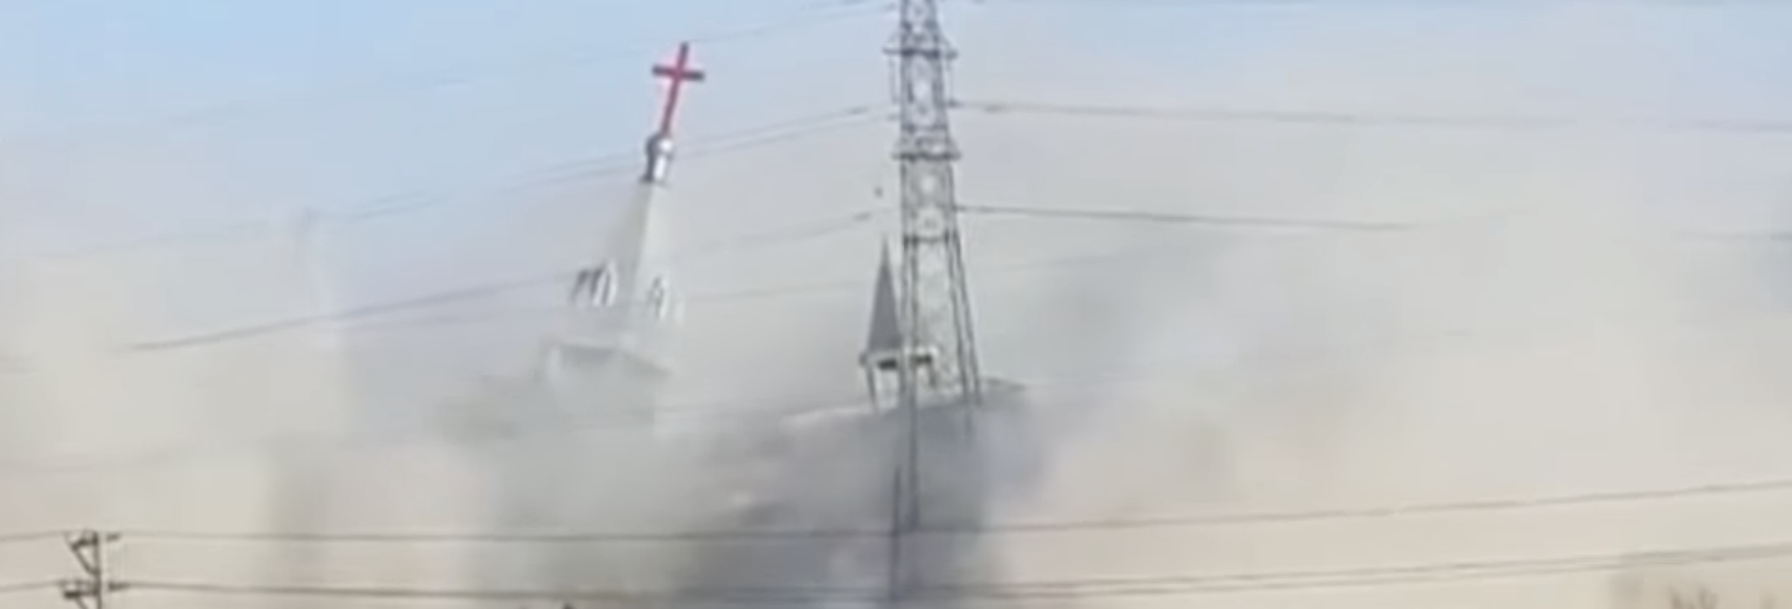 En Chine, les destructions d'églises continuent de se produire | photo: destruction d'une église dans le Shanxi en 2018 / capture d'écran YouTube